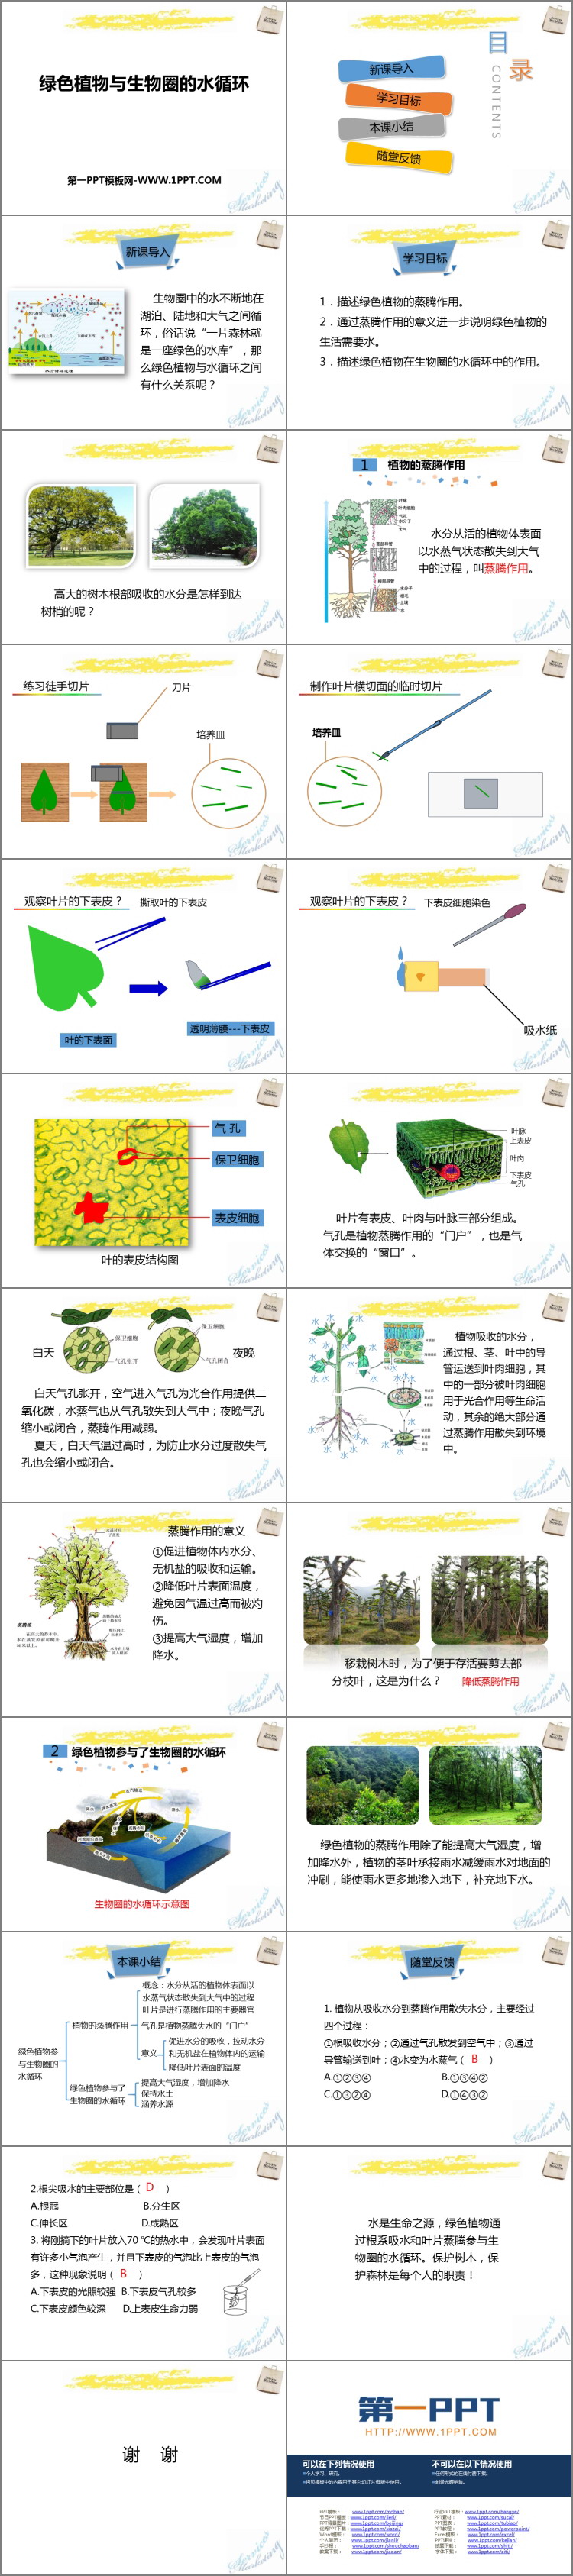 《绿色植物与生物圈的水循环》PPT课件下载-预览图02